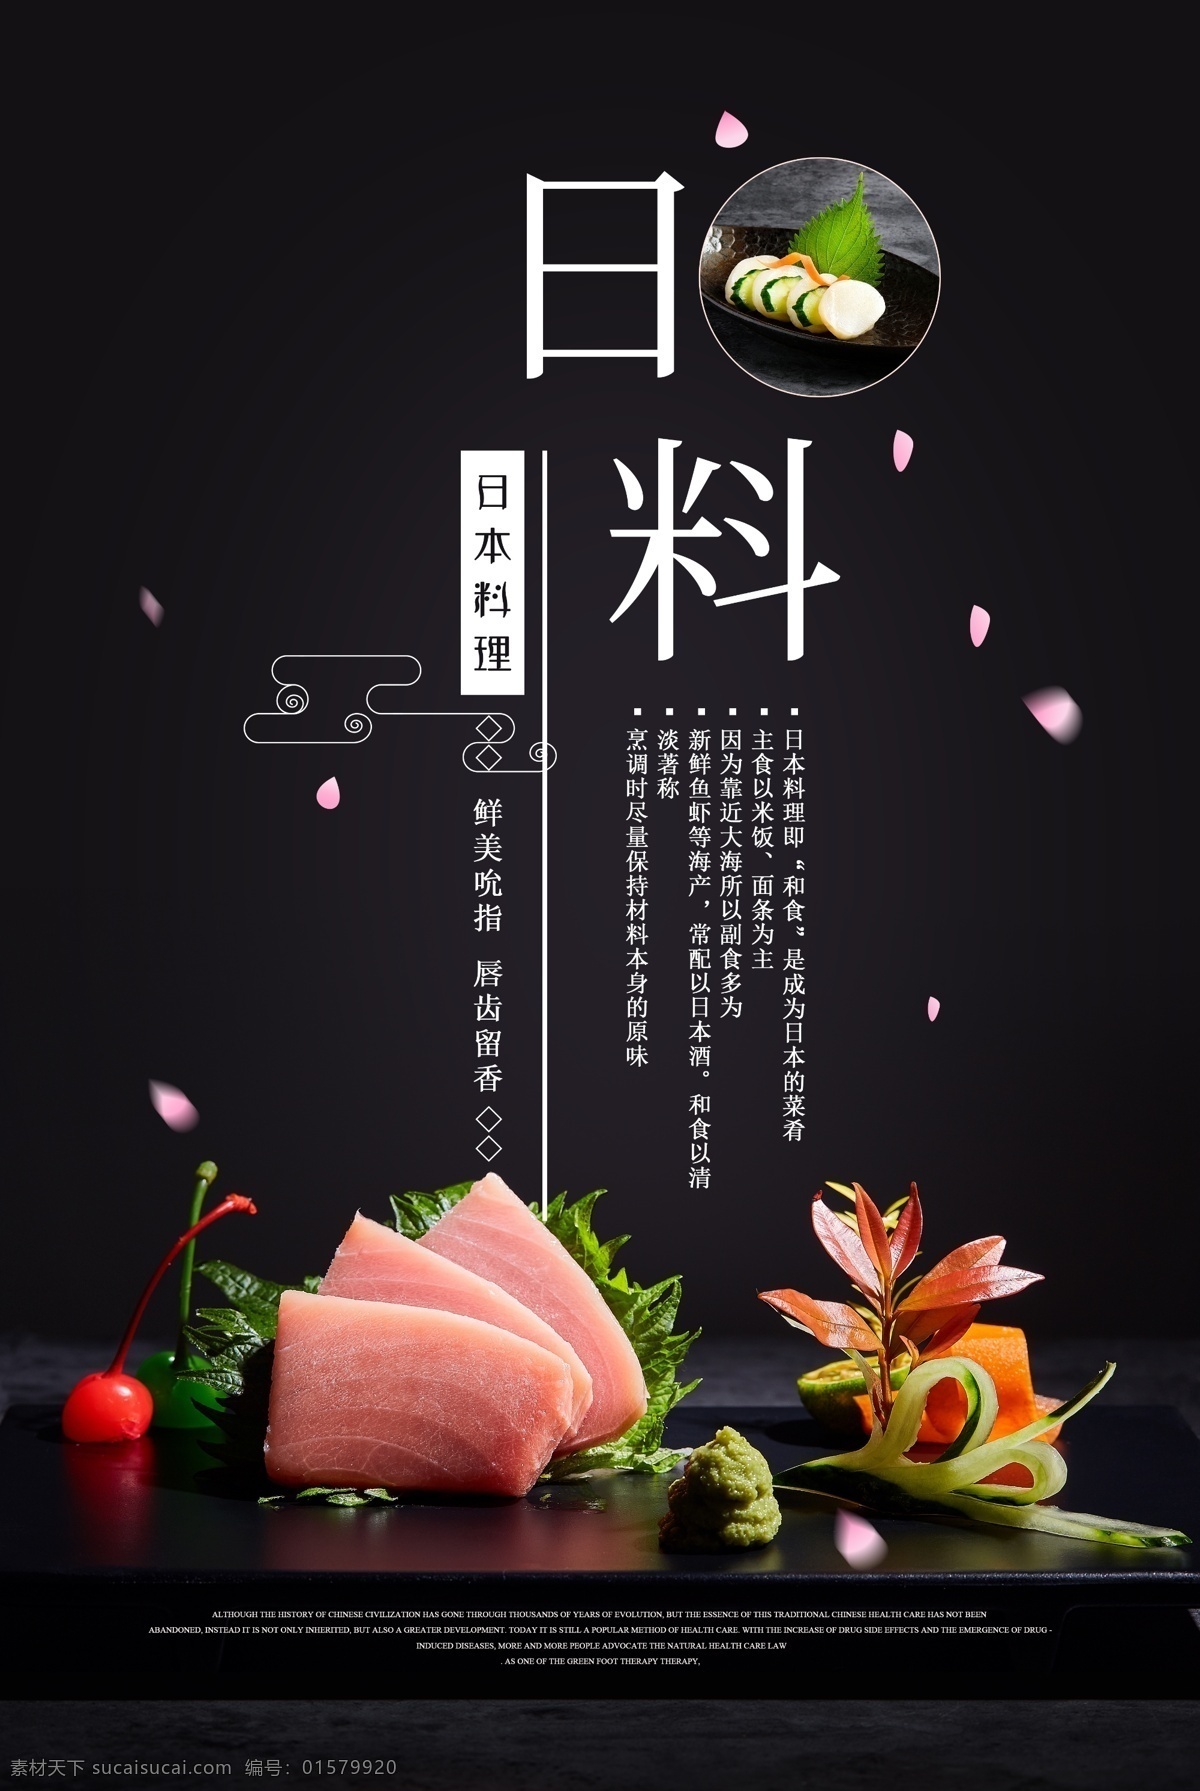 日式 料理 美食 活动 宣传海报 日式料理 宣传 海报 餐饮美食 类